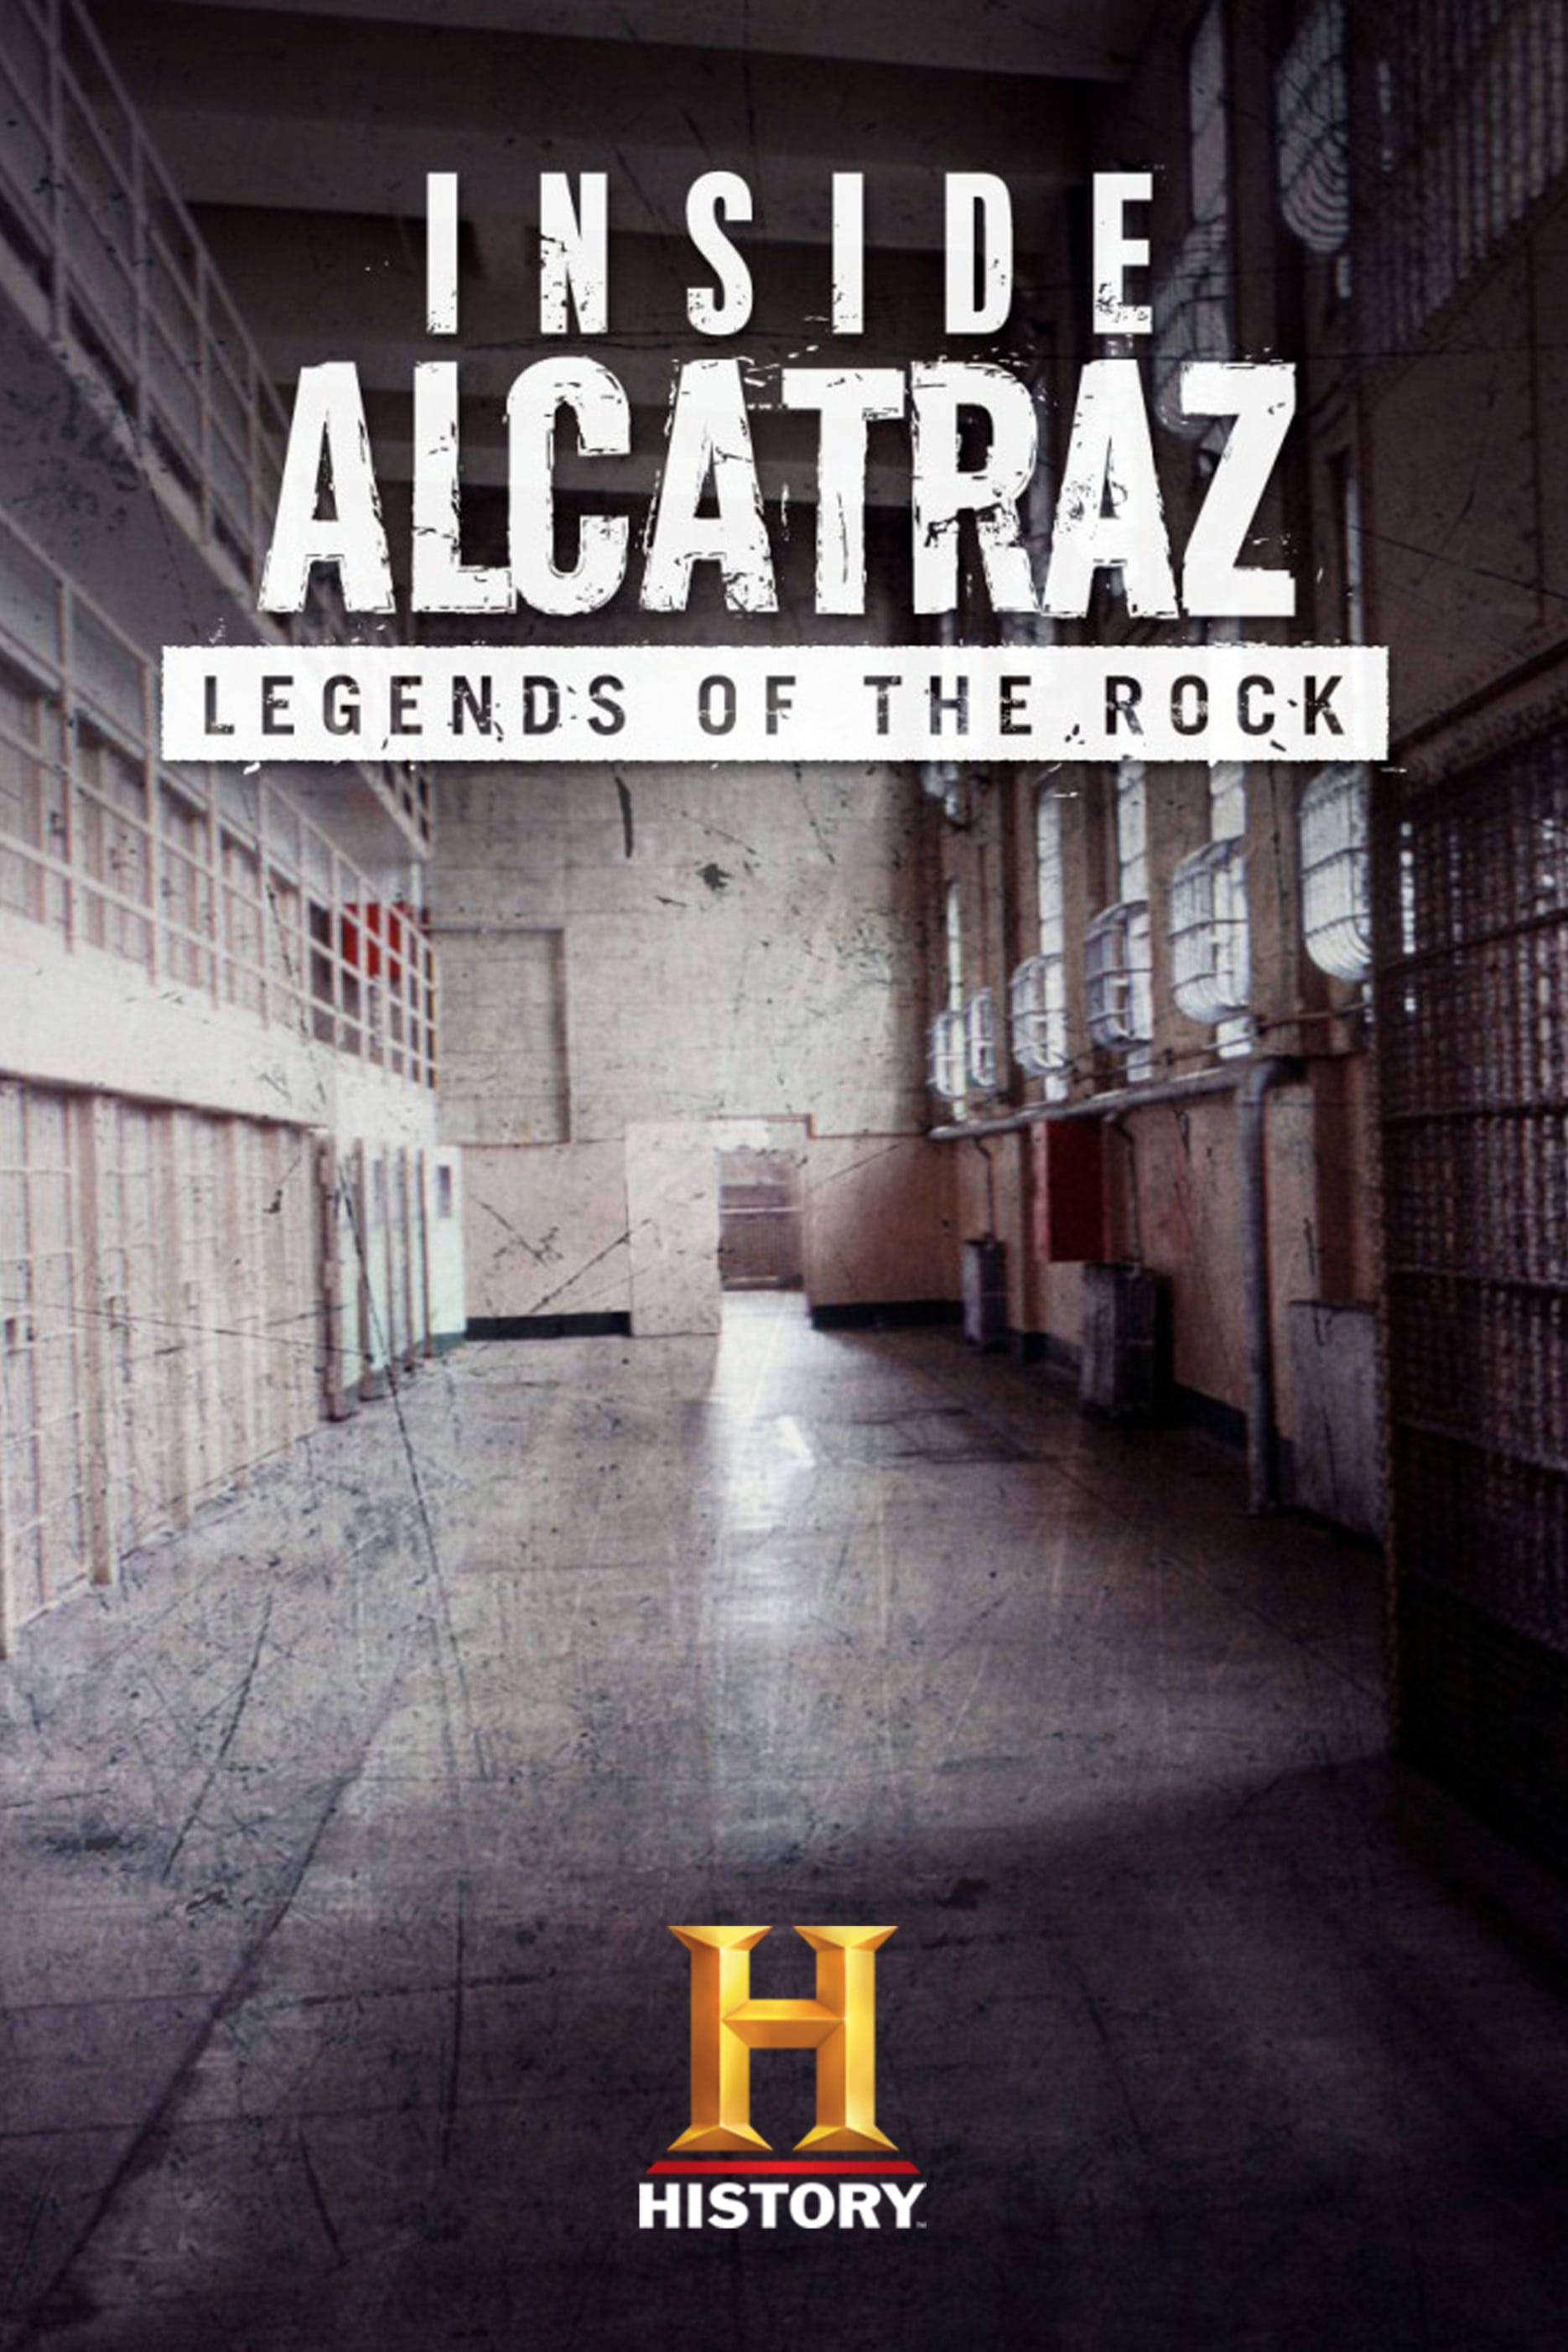 INSIDE ALCATRAZ, LEGENDS OF THE ROCK